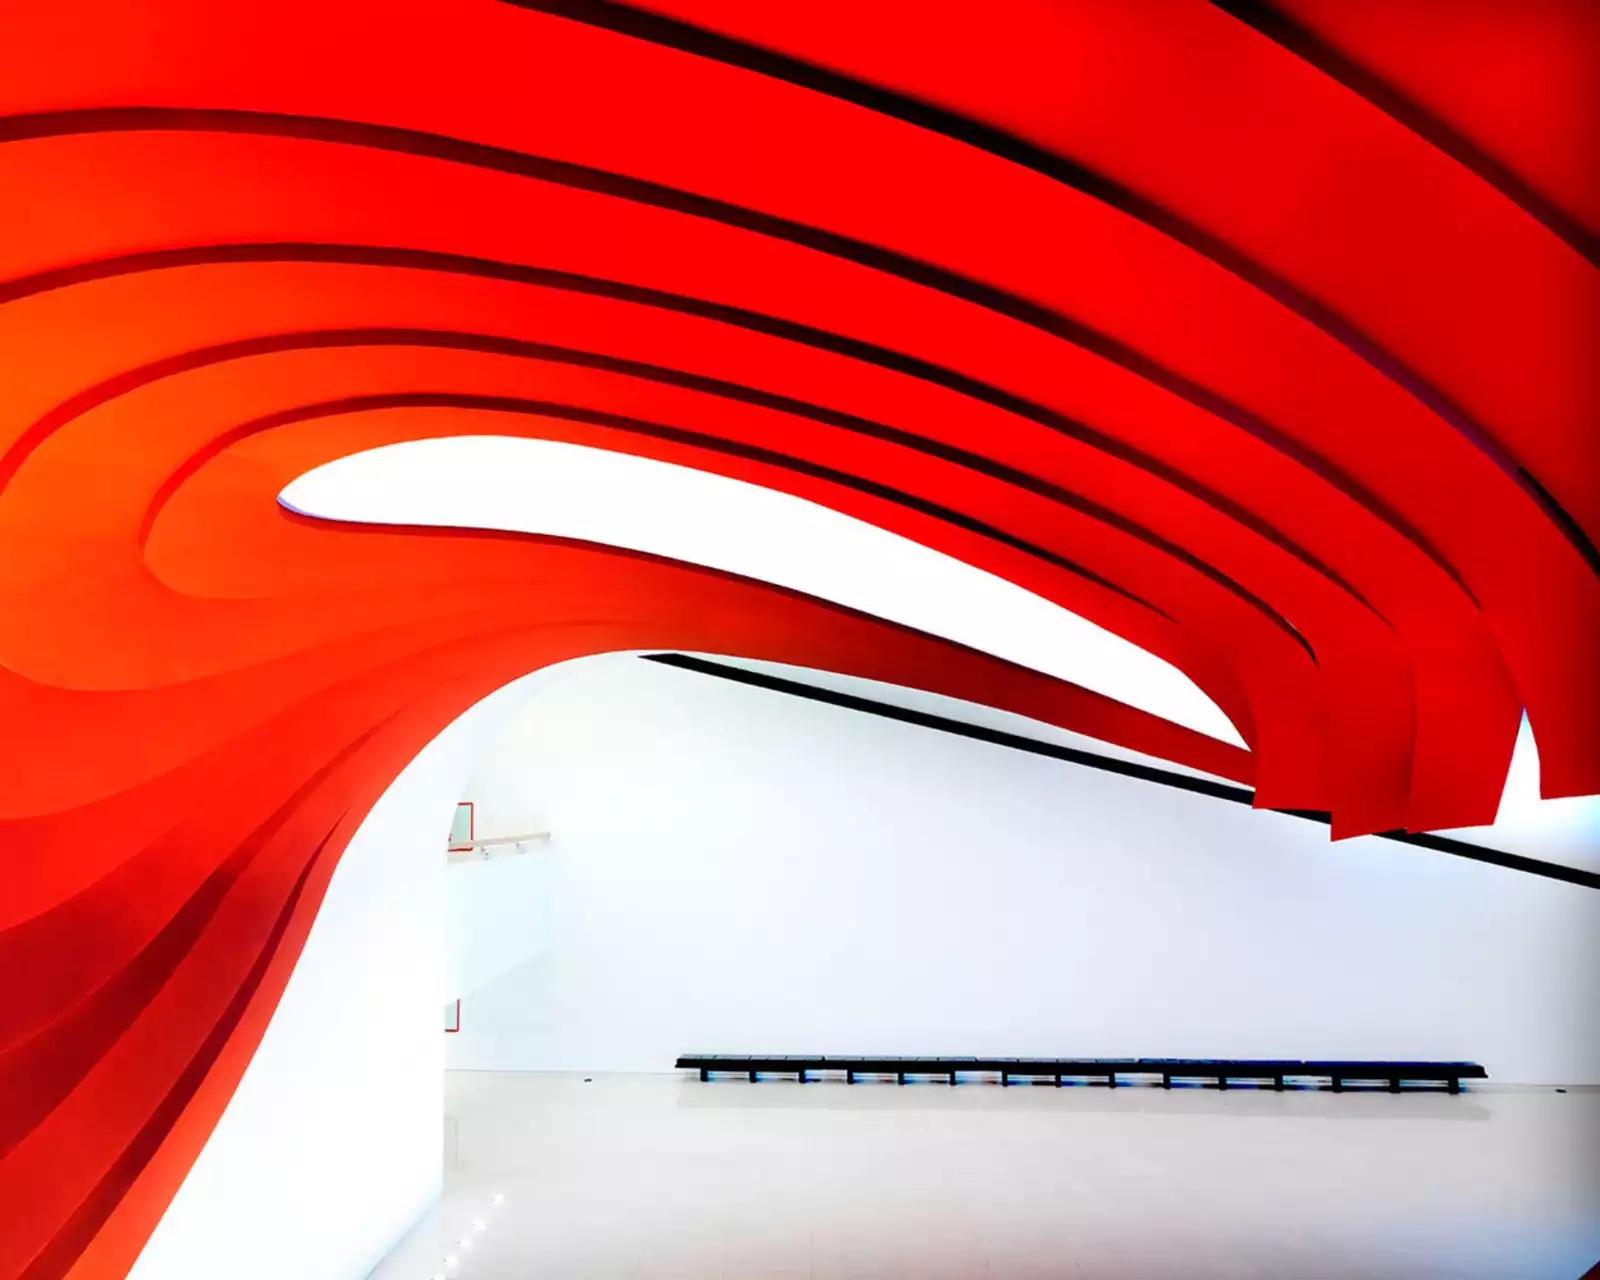 Auditorium Oscar Niemeyer II, Sao Paulo, Brésil
2012
Tirage chromogène
180 x 225 cm
Edition de 5

Italien, né en 1954 à Florence, Italie, basé à Florence, Italie

Massimo Listri parcourt son Italie natale et le monde avec son appareil photo,